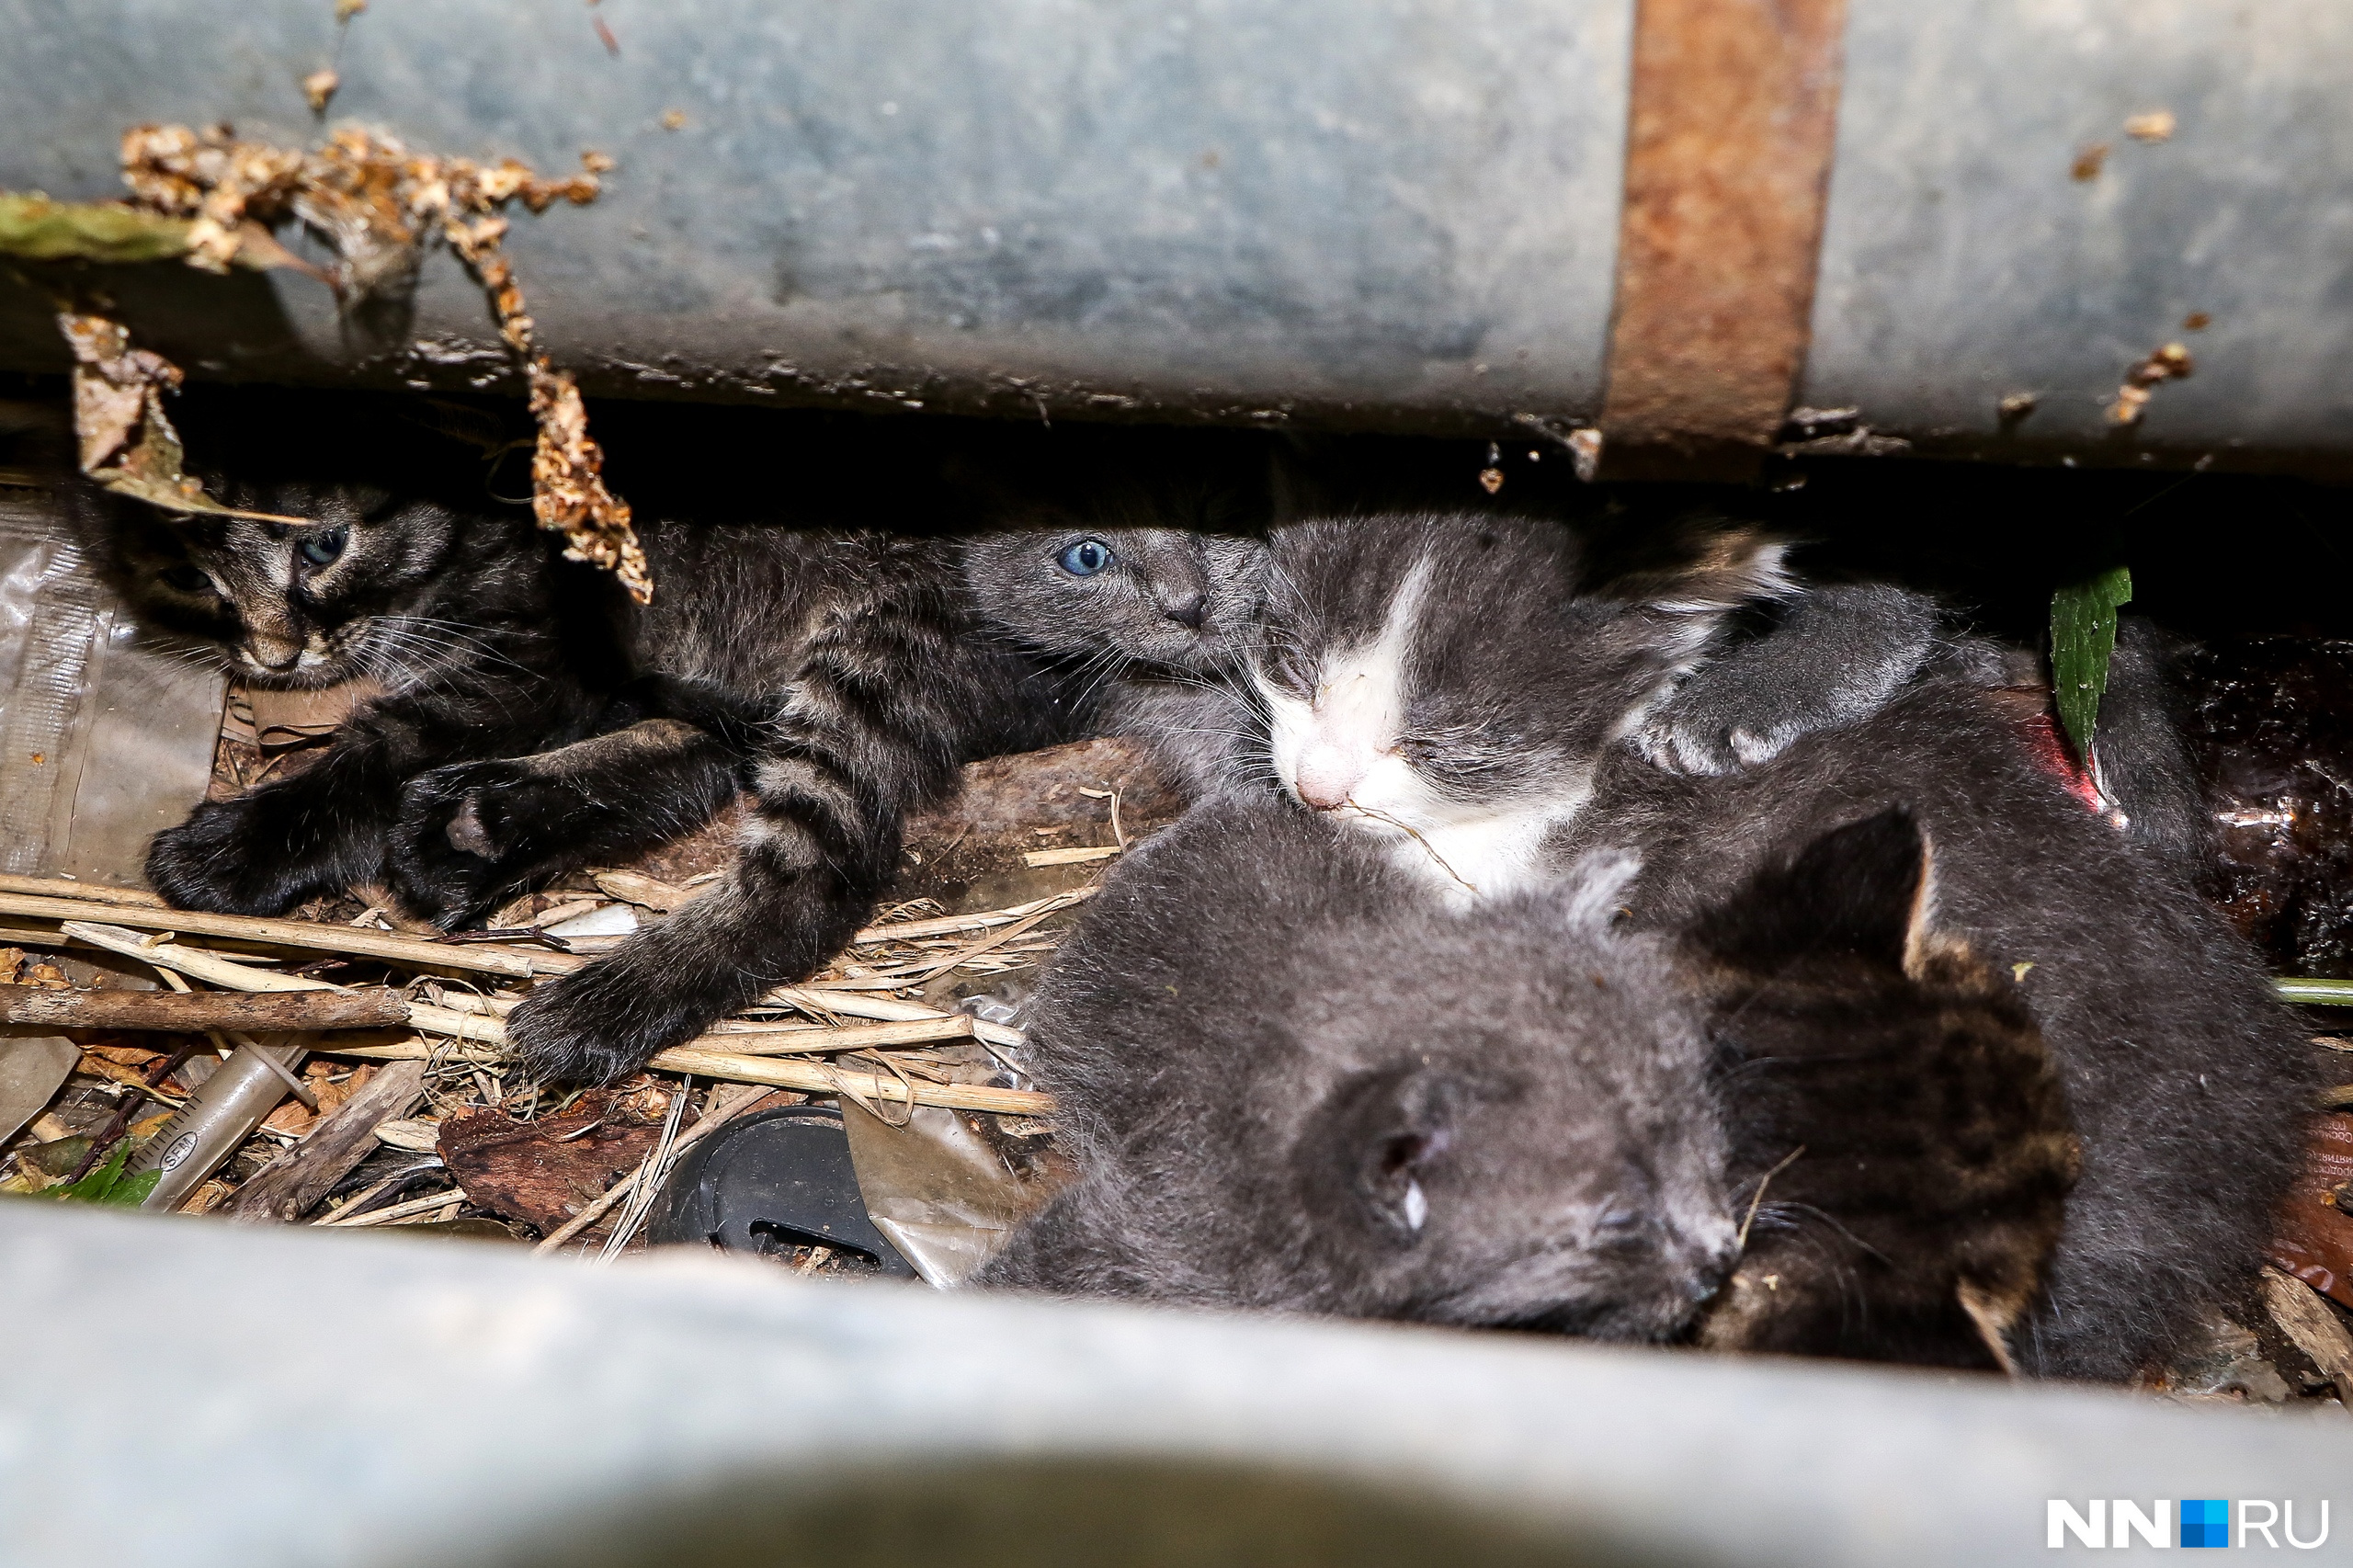 Это одно из первых фото котят. Мама «свила им гнездо» в мусоре под трубами. Наш Жиробасик на фото слева. Посмотрите, остальным комочкам тоже нужны хозяева